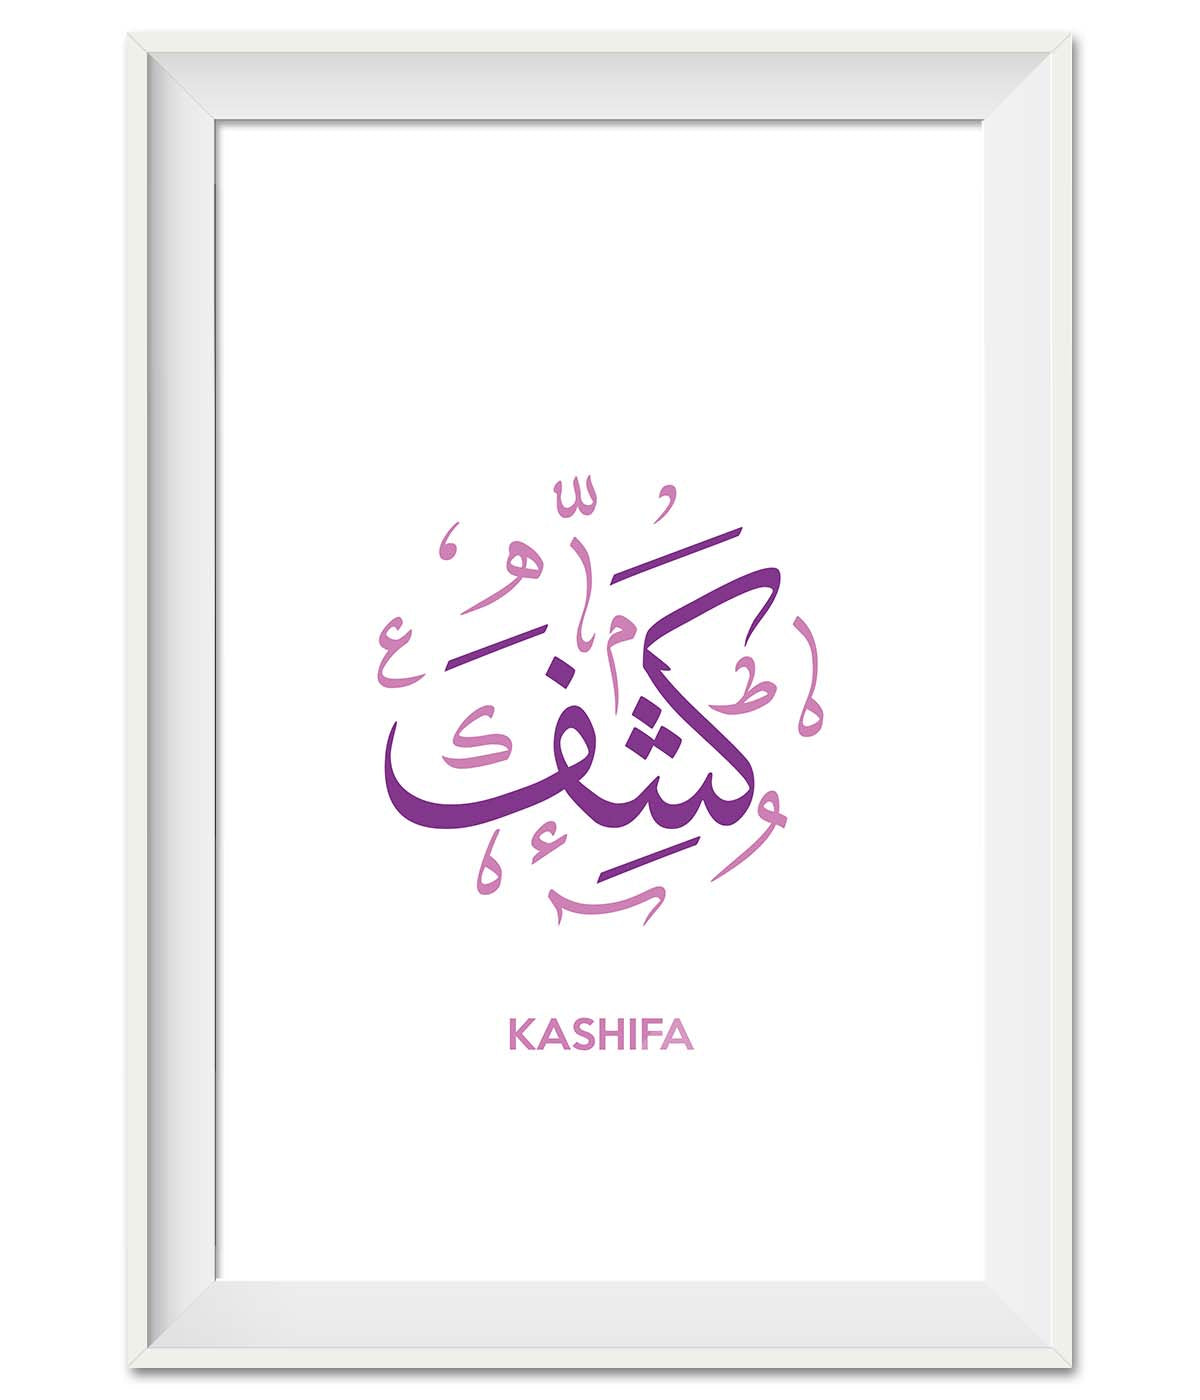 Kashifa